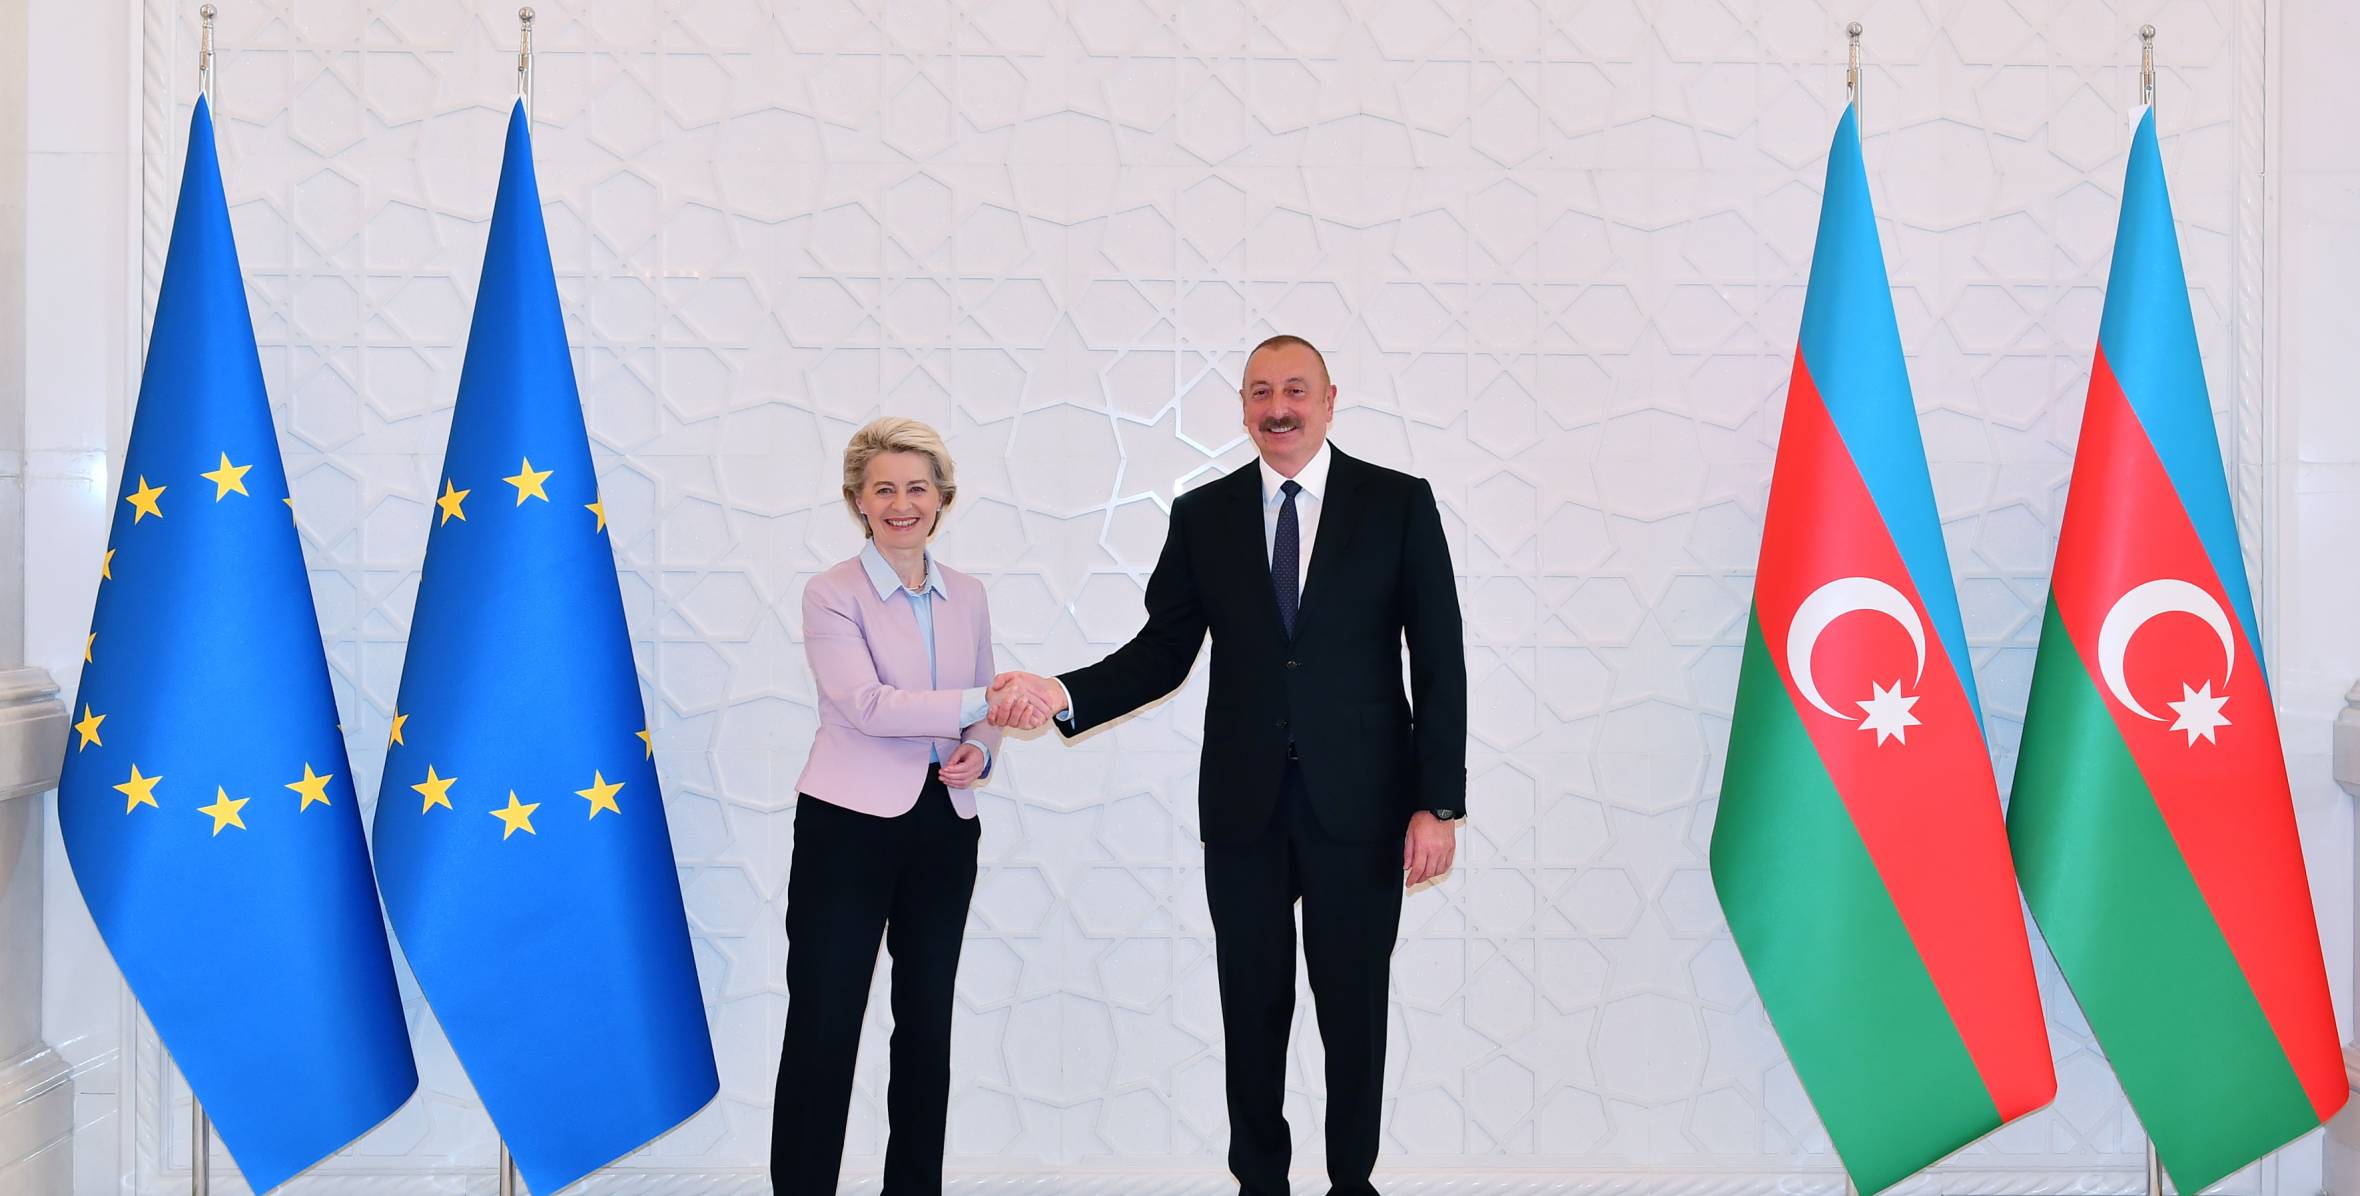 Состоялась встреча Президента Ильхама Алиева с президентом Европейской комиссии в расширенном составе